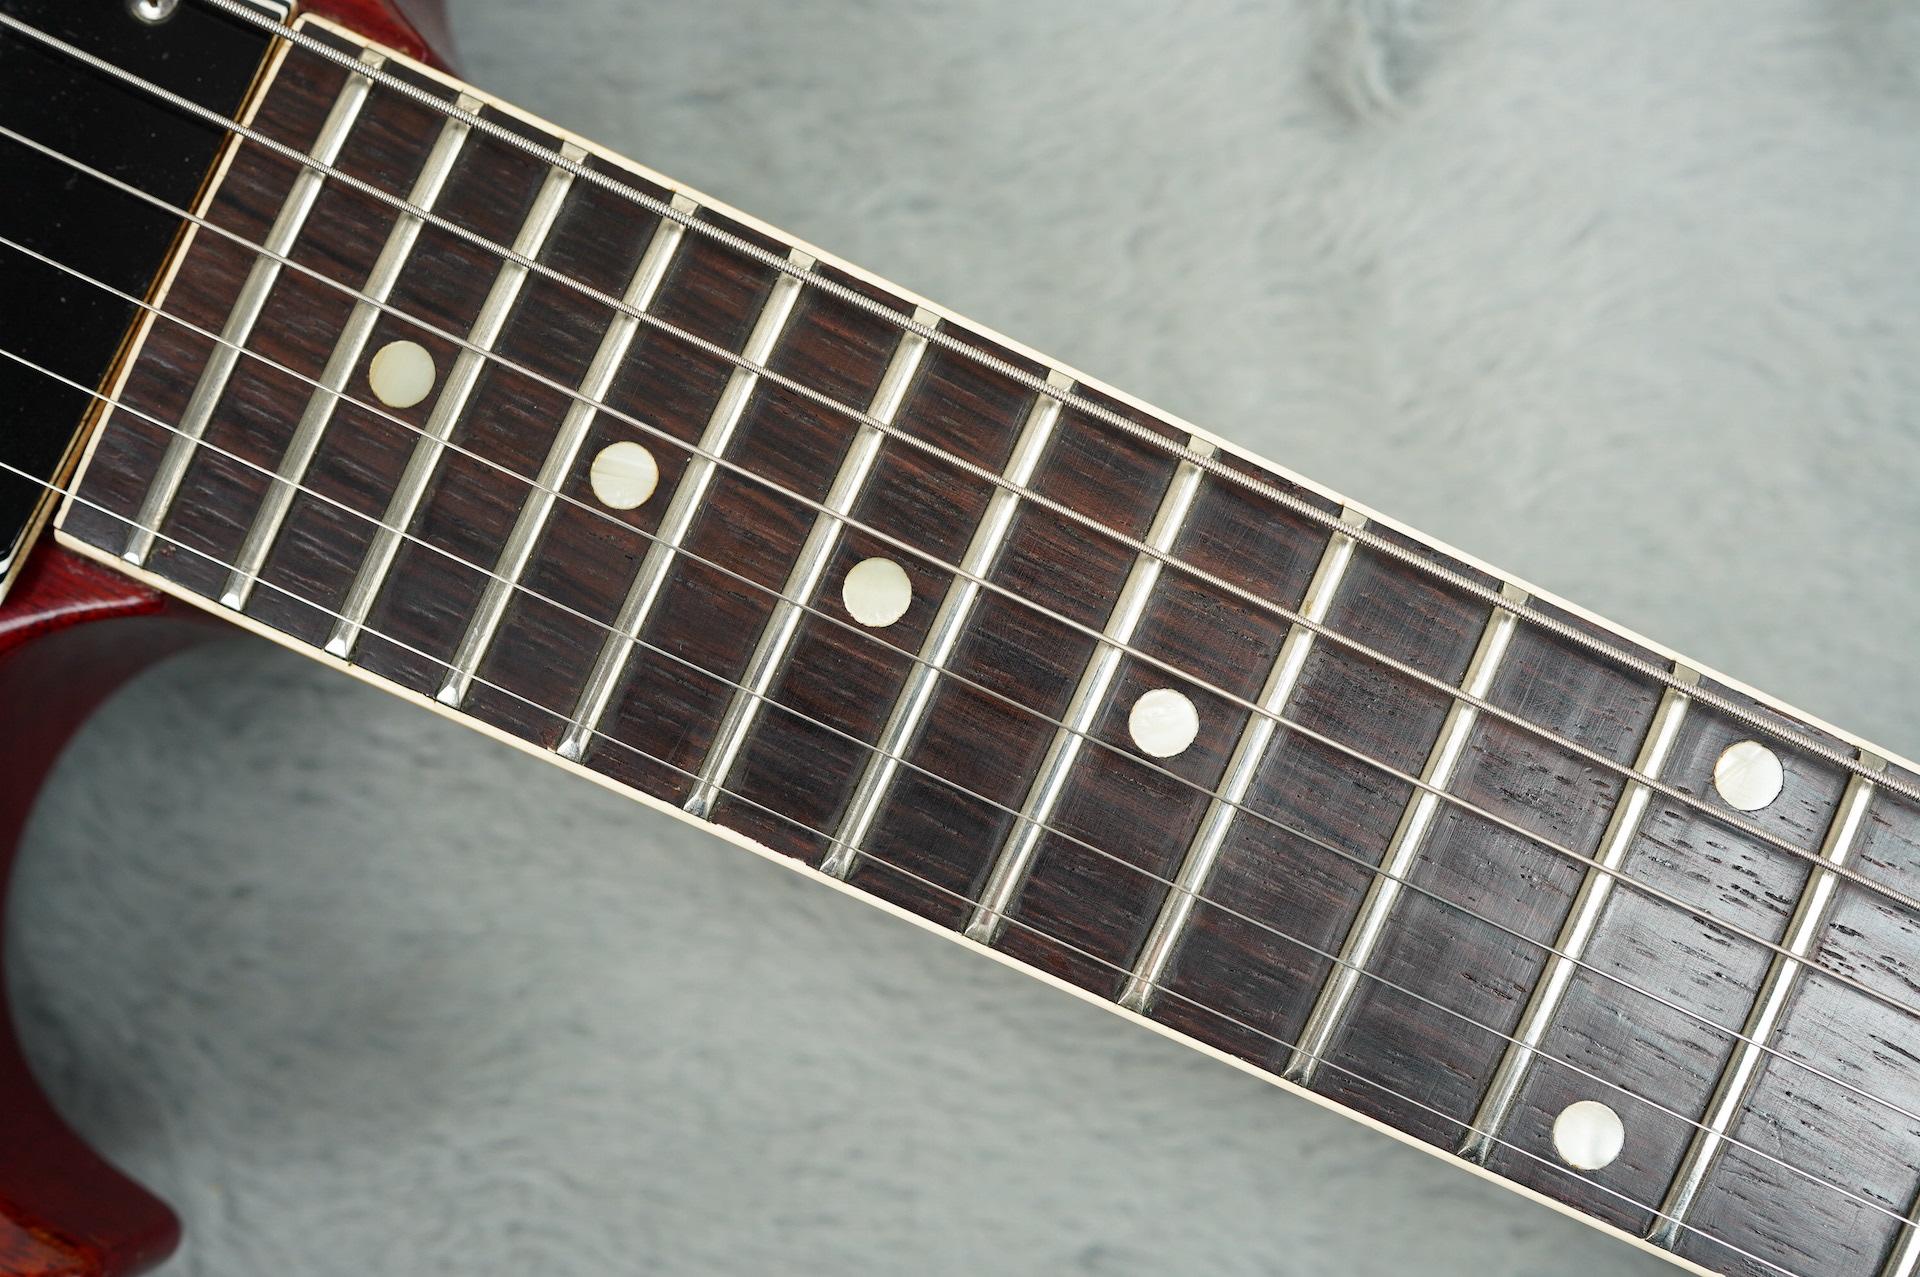 1963 Gibson SG Special